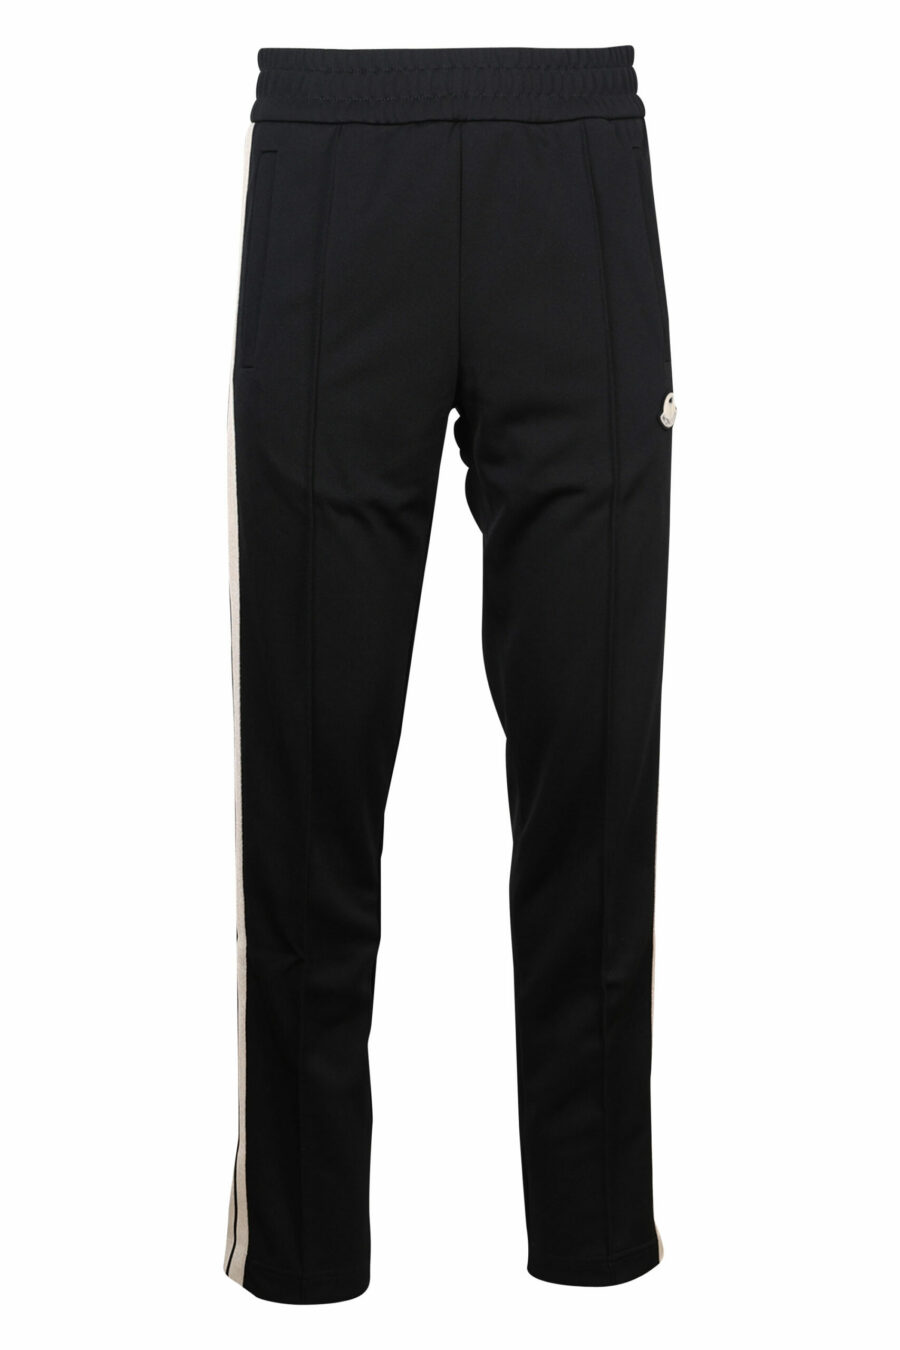 Pantalon de survêtement noir avec bandes latérales blanches - 8057151109214